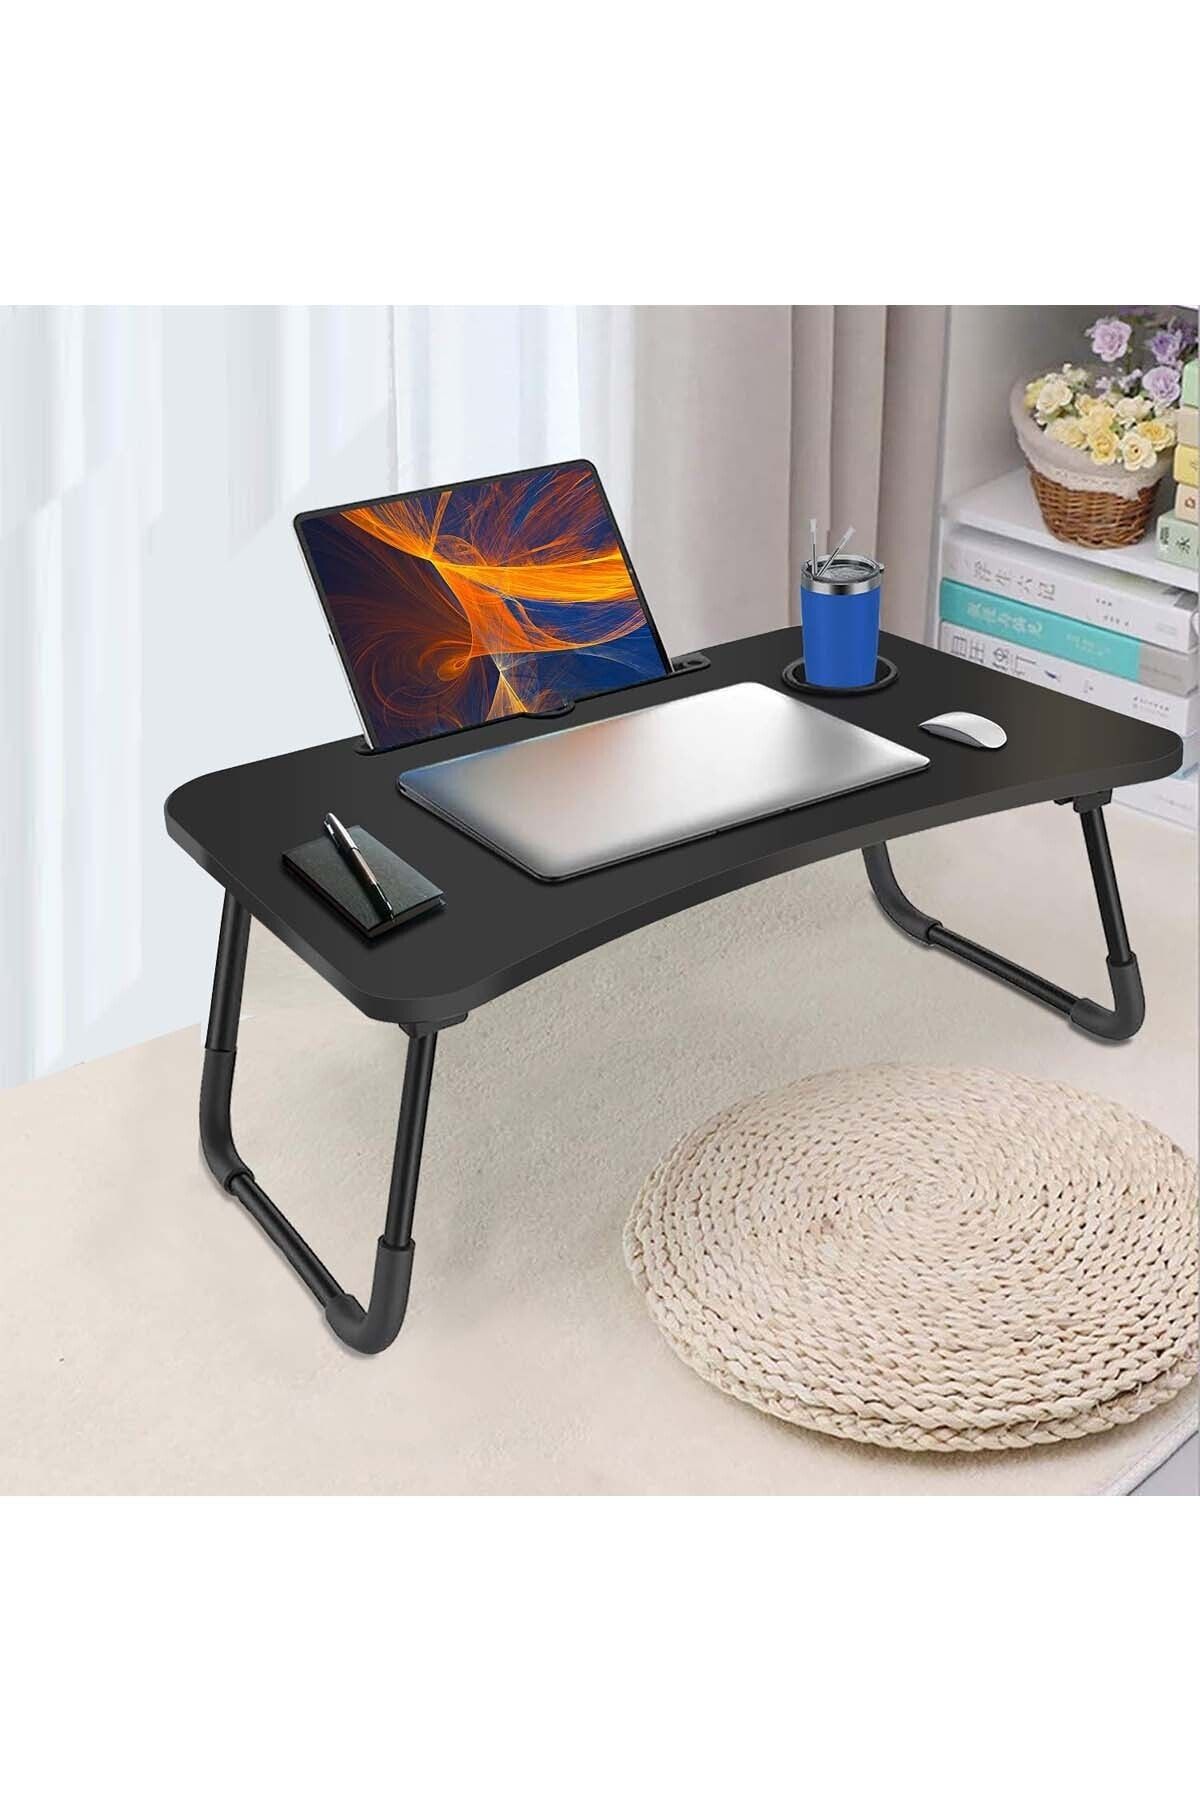 hodbehod Yatak Koltuk Üstü Laptop Tablet Sehpası Katlanır Siyah Ayaklı Çalışma Kahvaltı Masası